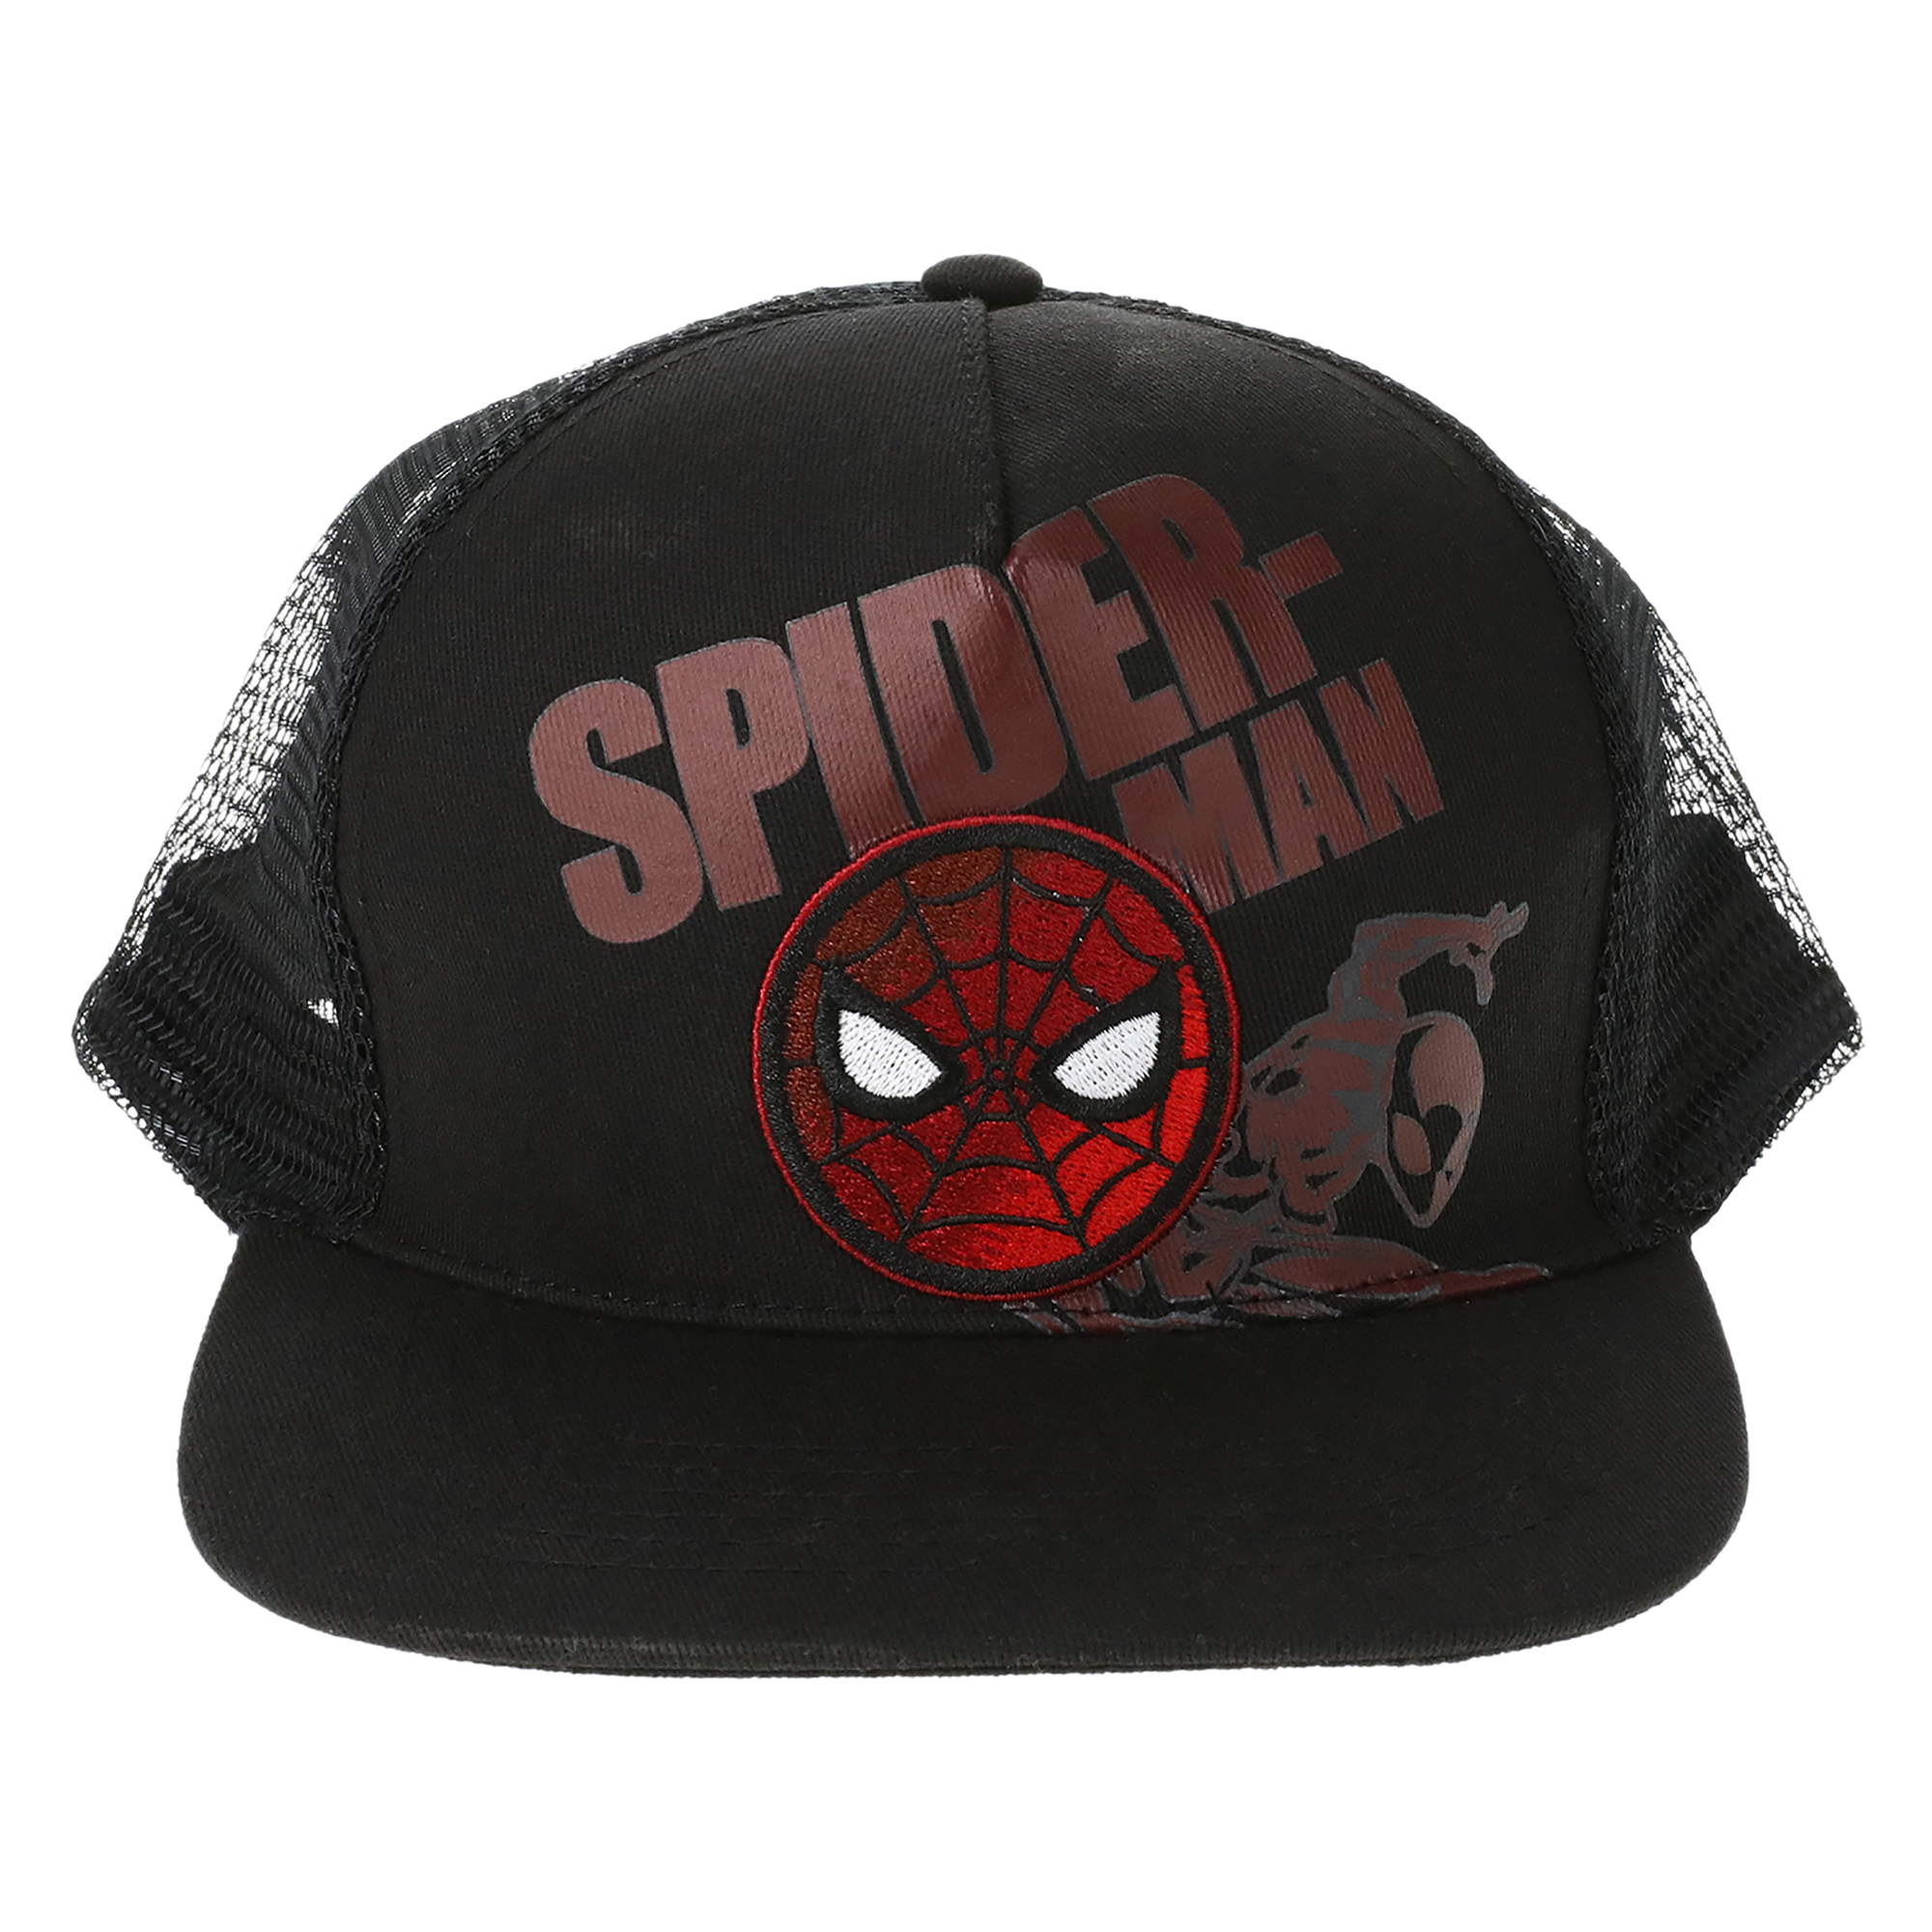 Spider-Man trucker hat